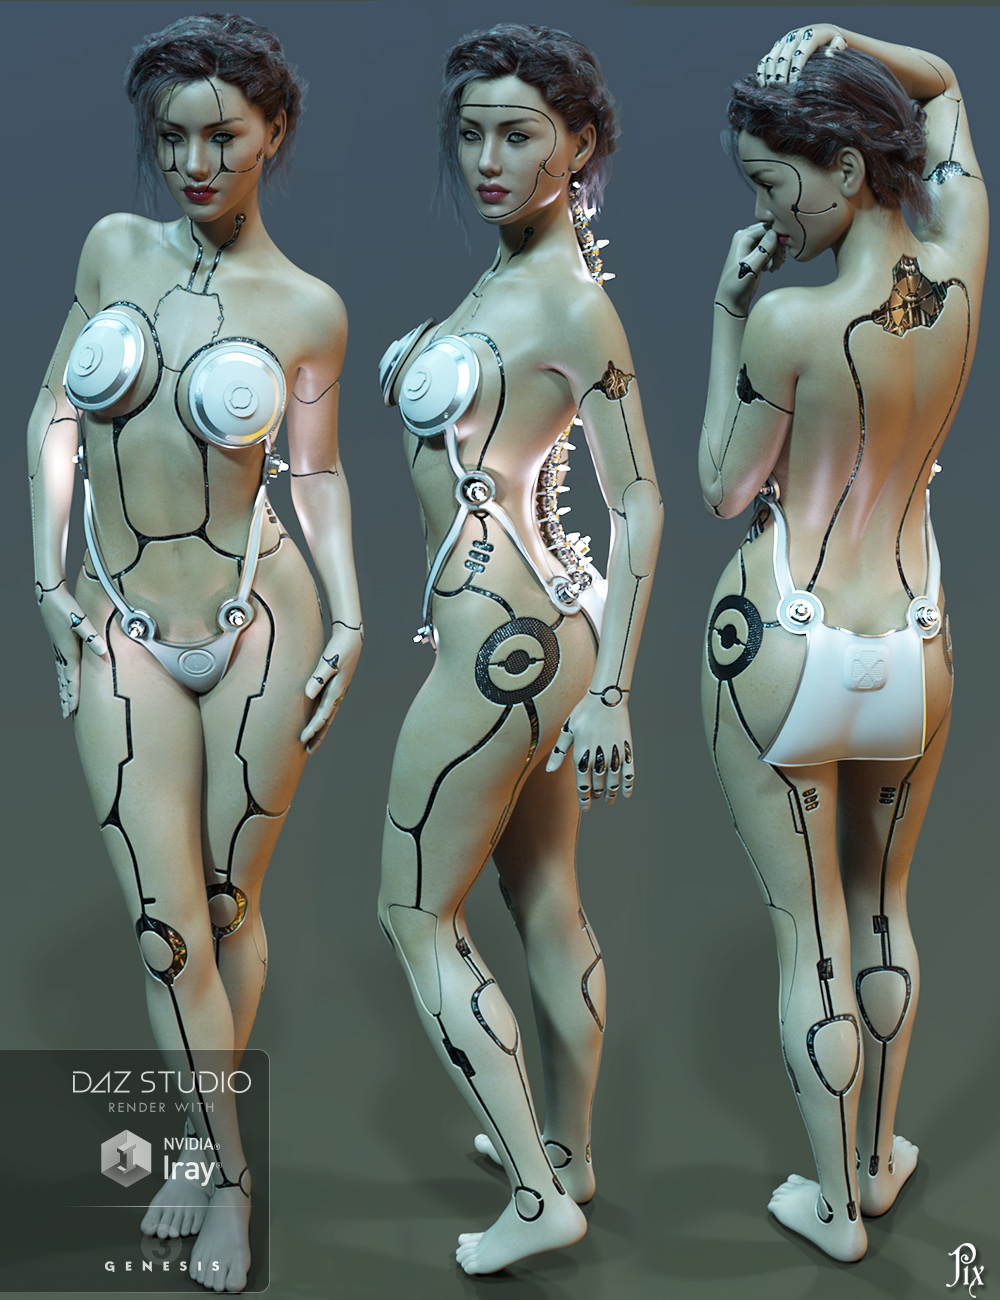 Pix - Synx for Genesis 3 Female by: PixelunaTraveler, 3D Models by Daz 3D